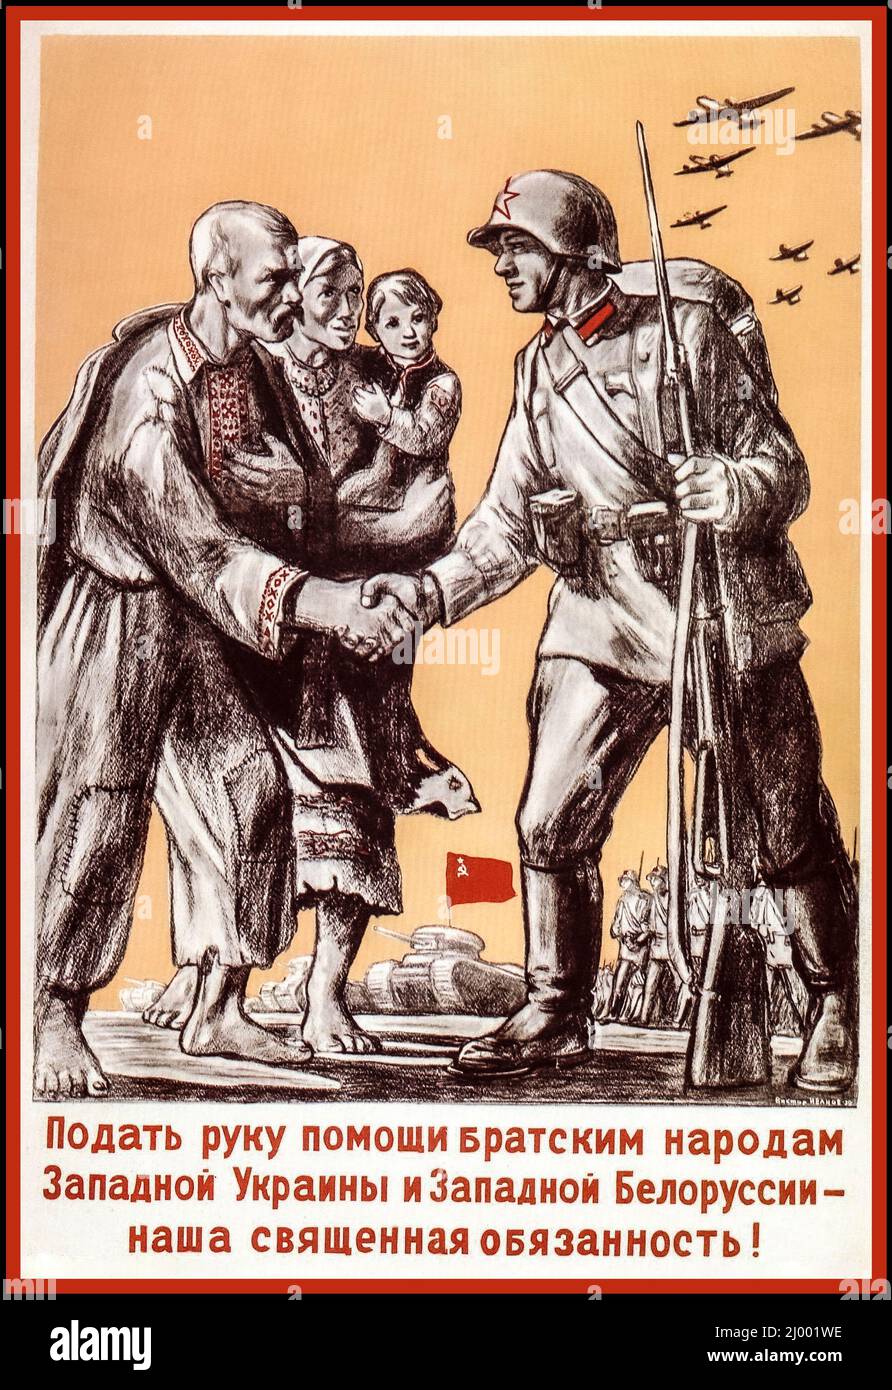 Vintage 1939 WW2 russe soviétique Poster 'de prêter une main volontaire aux nations fraternelles de l'Ukraine occidentale et de la Biélorussie occidentale - est notre devoir sacré! '- Union soviétique, 1939 Seconde Guerre mondiale Seconde Guerre mondiale Banque D'Images